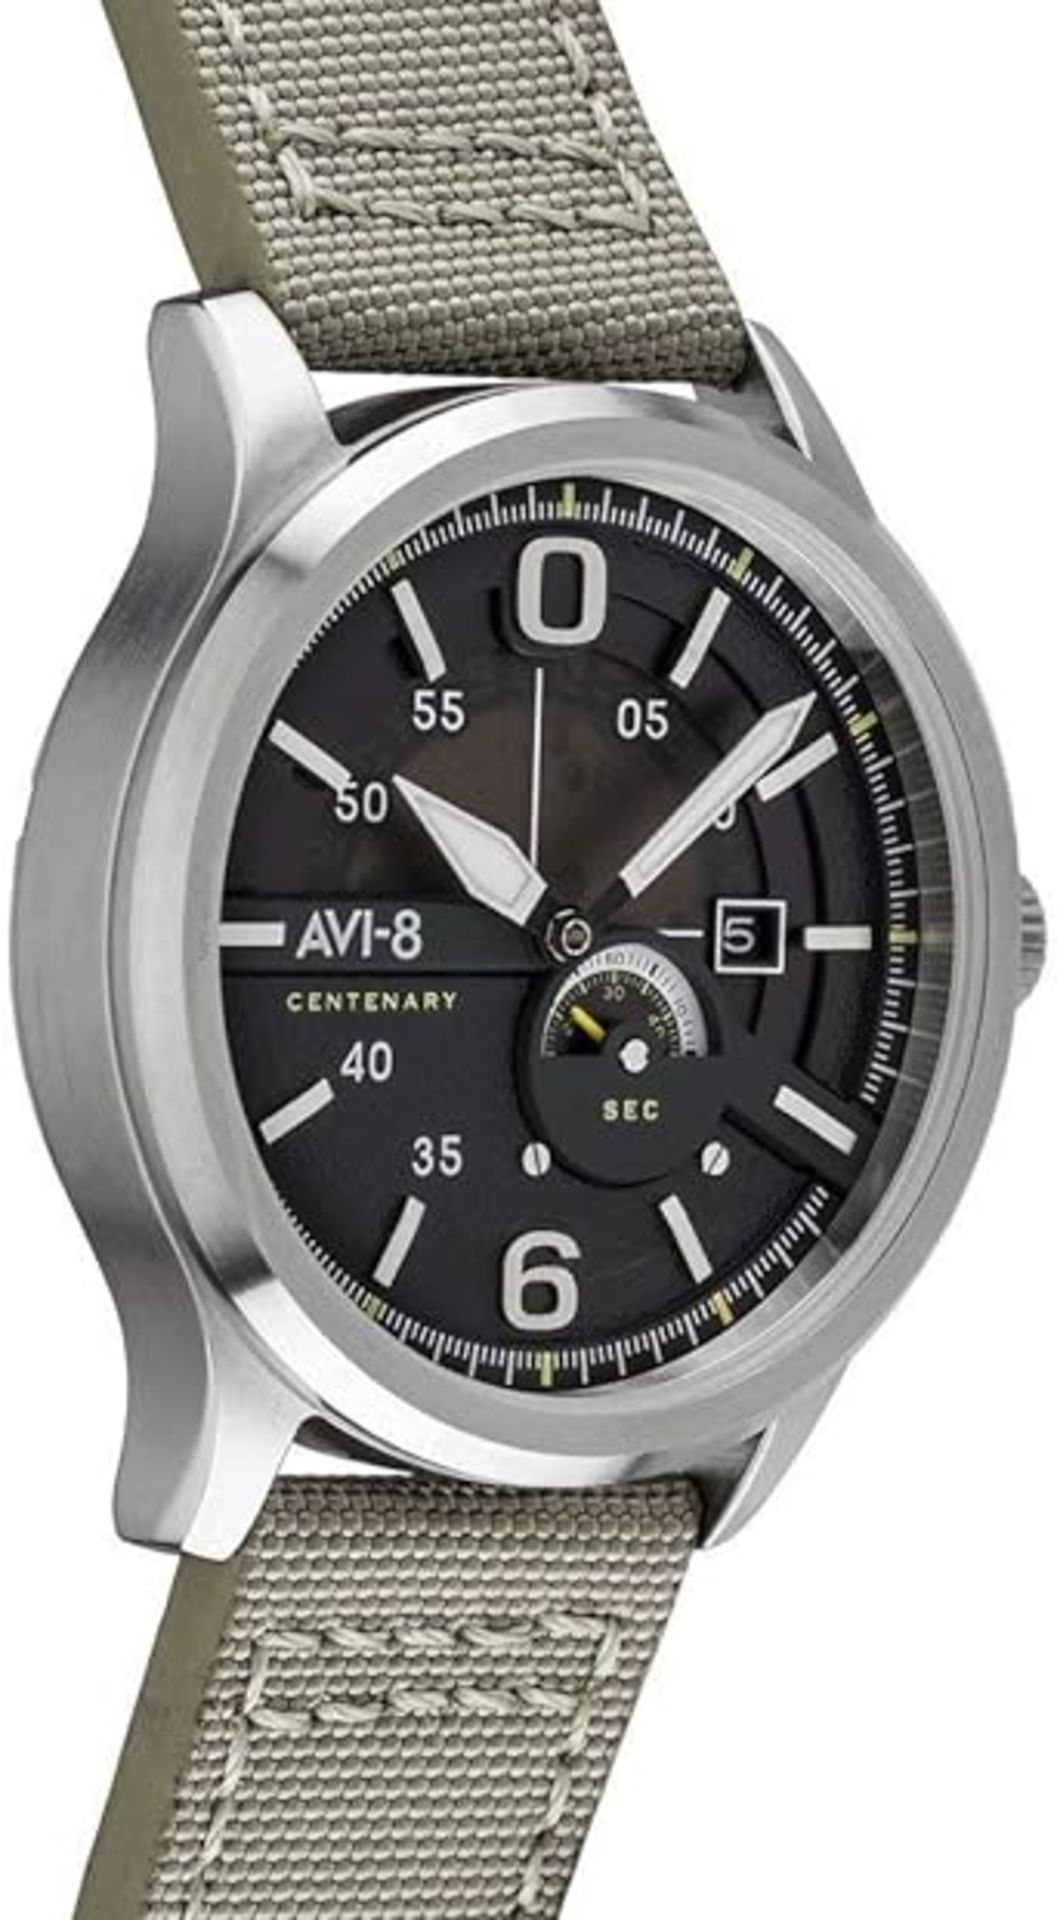 AVI-8 Men's Analog Japanese Quartz Watch with Leather Strap AV-4061-01 - Image 4 of 5